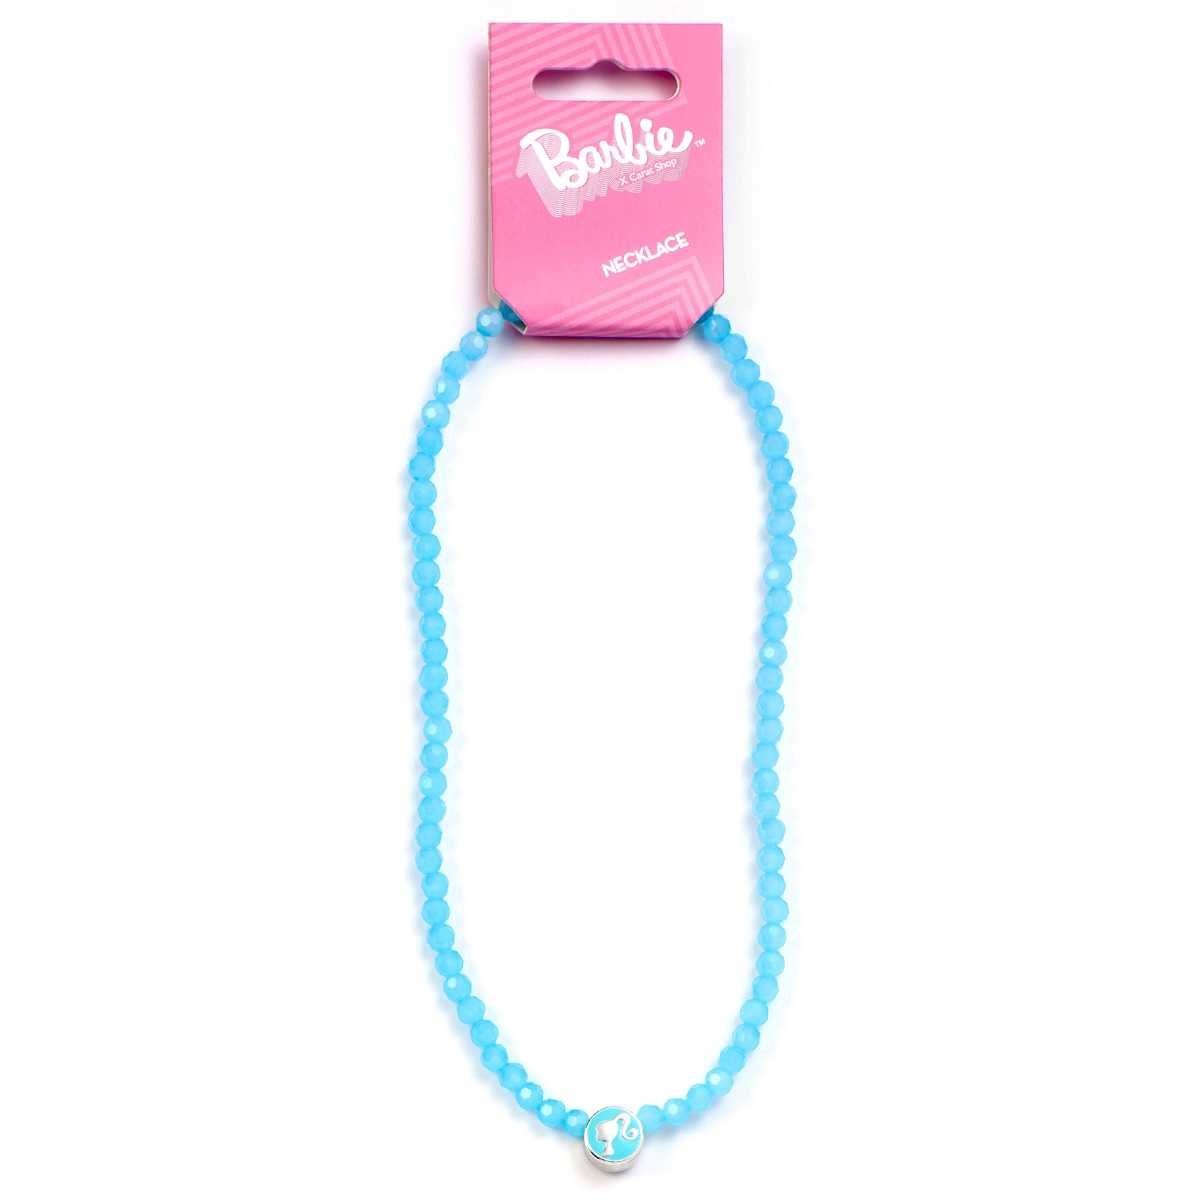 Barbie™️ Blue Bead Necklace with Barbie Silhouette Charm - Barbie x Carat Shop - Simon's Collectibles